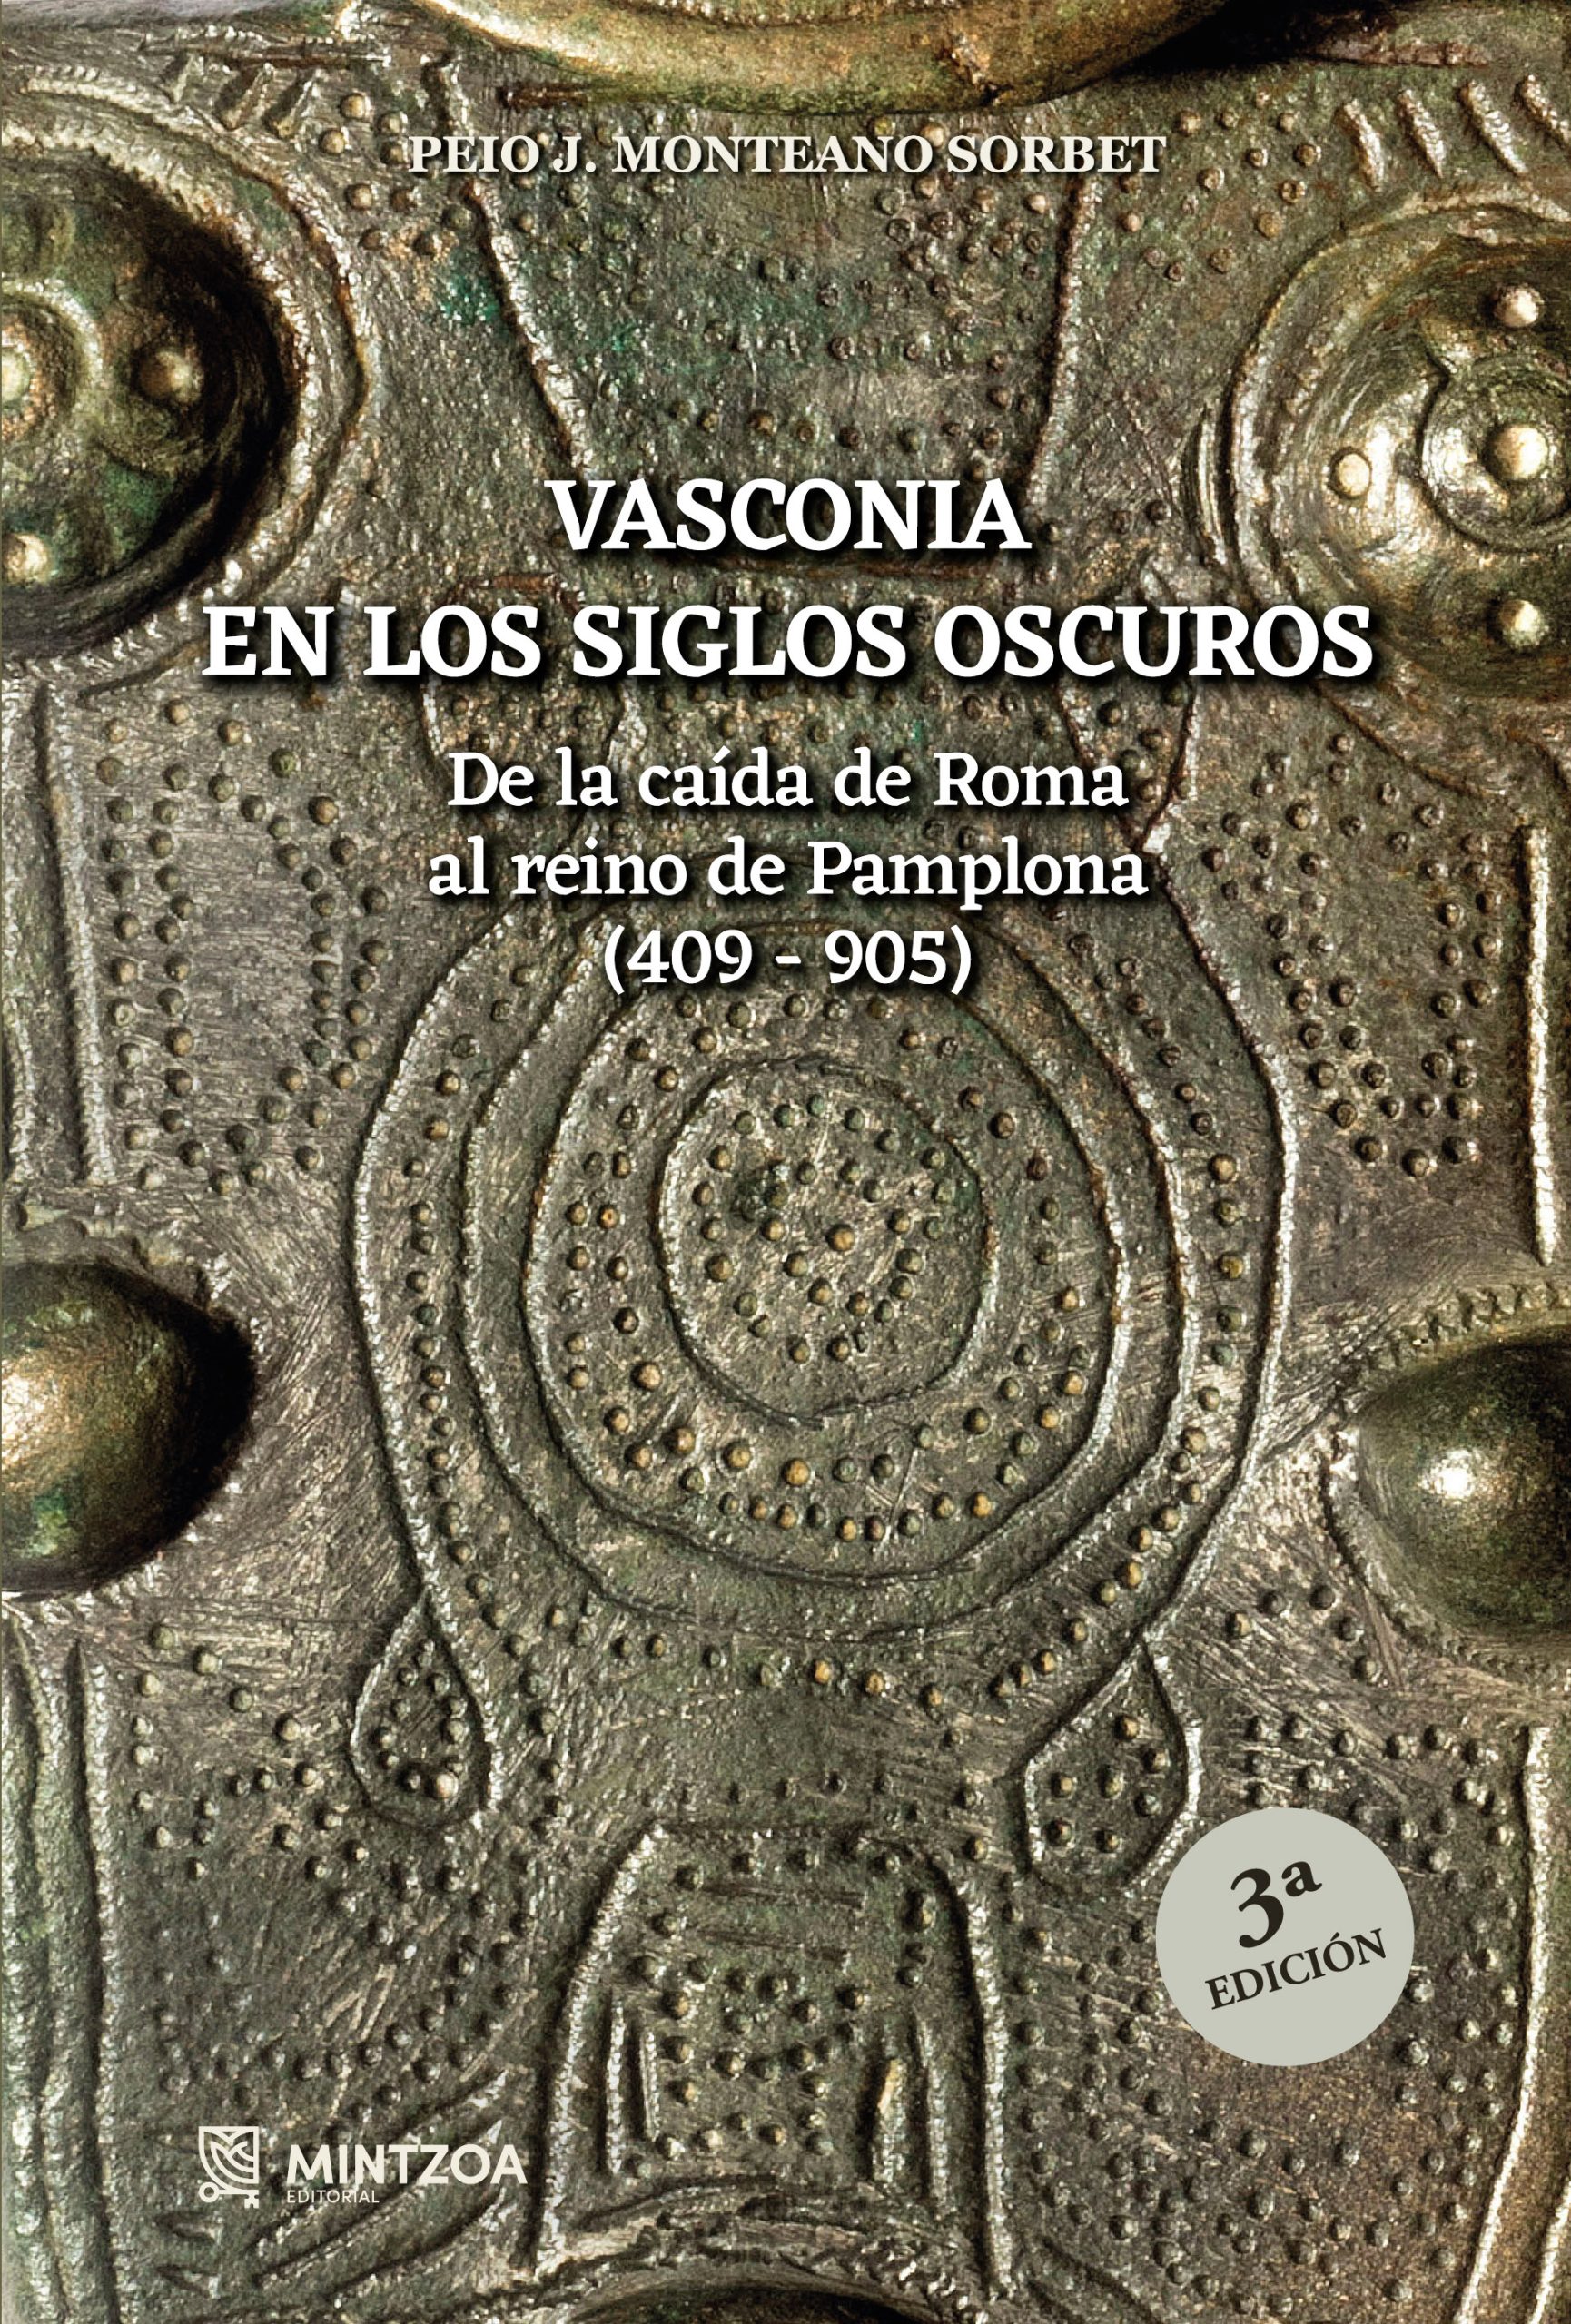 VASCONIA EN LOS SIGLOS OSCUROS. De la caída de Roma al reino de Pamplona (409-905)- 3ª Edición